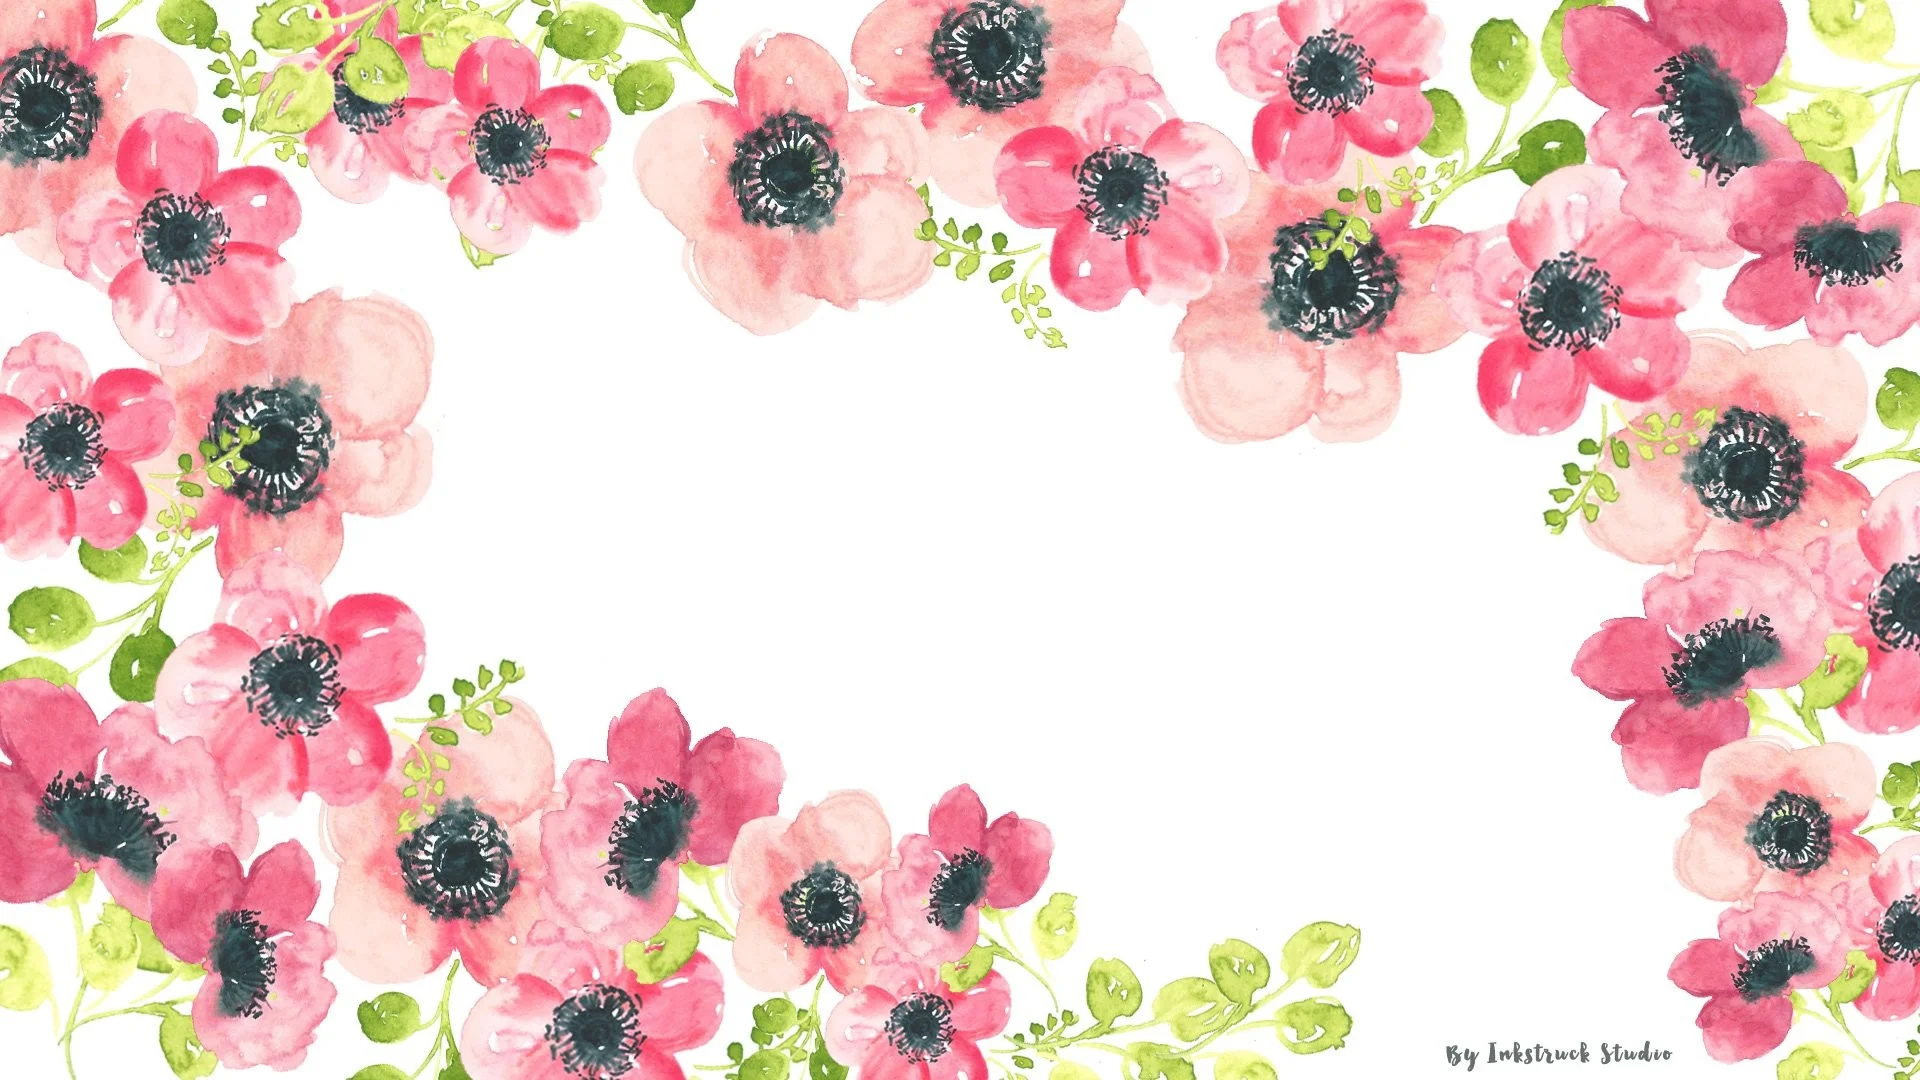 watercolor-floral-desktop-wallpaper.jpg 1,920Ã1,080 pixels | Wallpapers |  Pinterest | Wallpaper, Laptop backgrounds and Wallpaper desktop